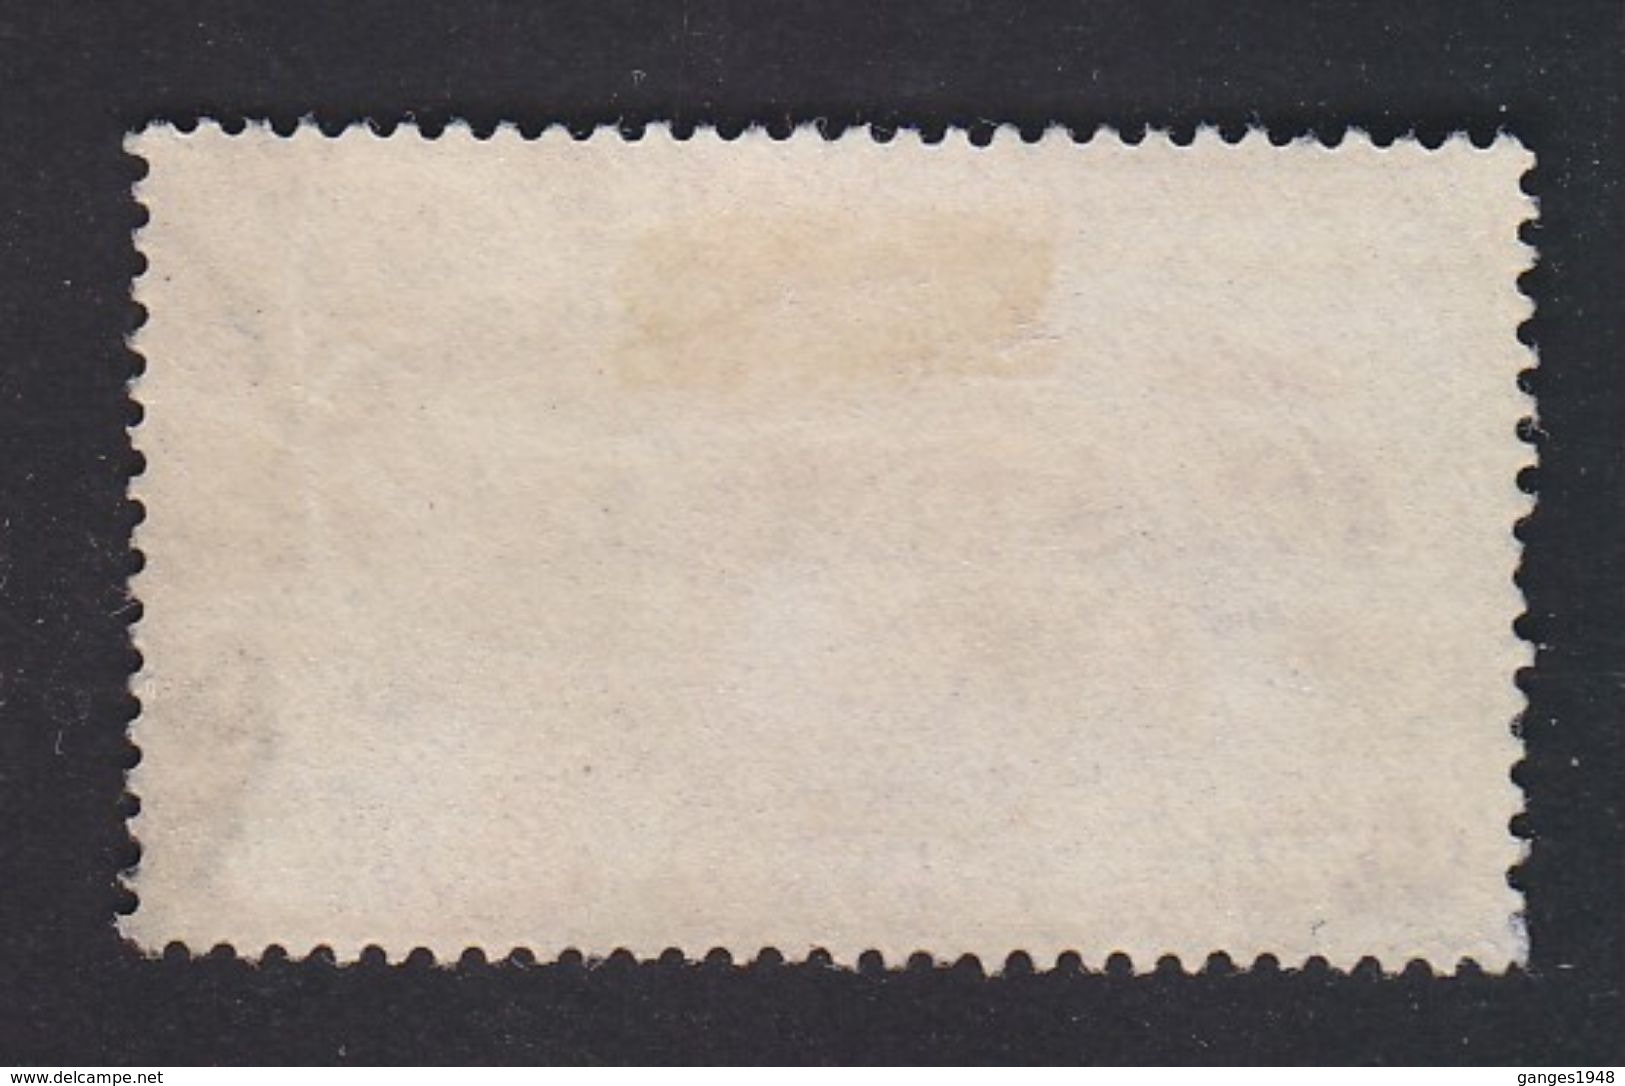 WAR & RELIEF FUND 1/2A   BOMBAY India CHarity Stamp Label # 20409 S - Wohlfahrtsmarken